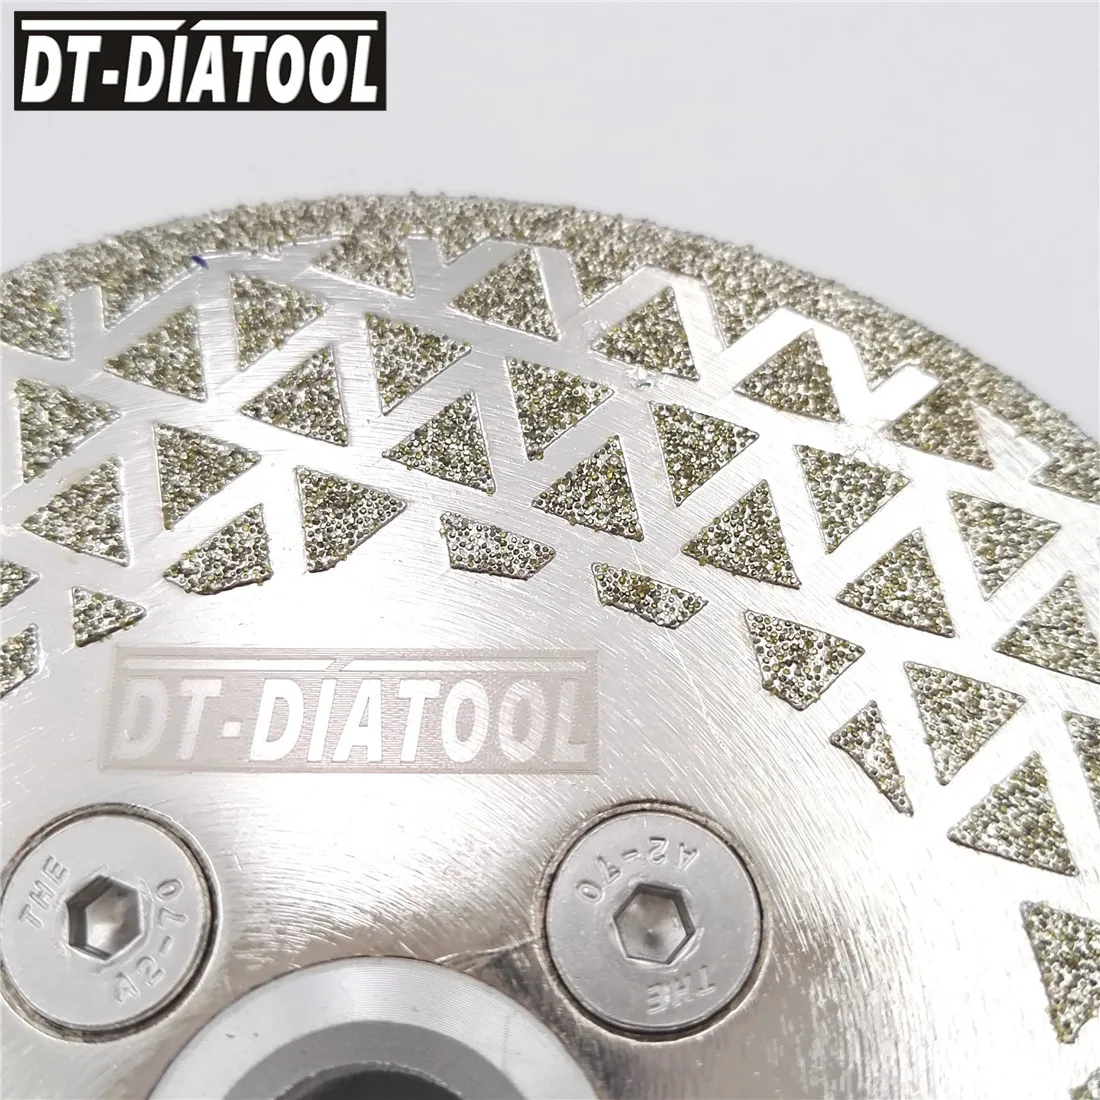 DT-DIATOOL 1 шт. гальванизированное алмазное режущее и шлифовальное лезвие M14, фланец для плитки, мрамора, одностороннее алмазное режущее полотно от AliExpress WW